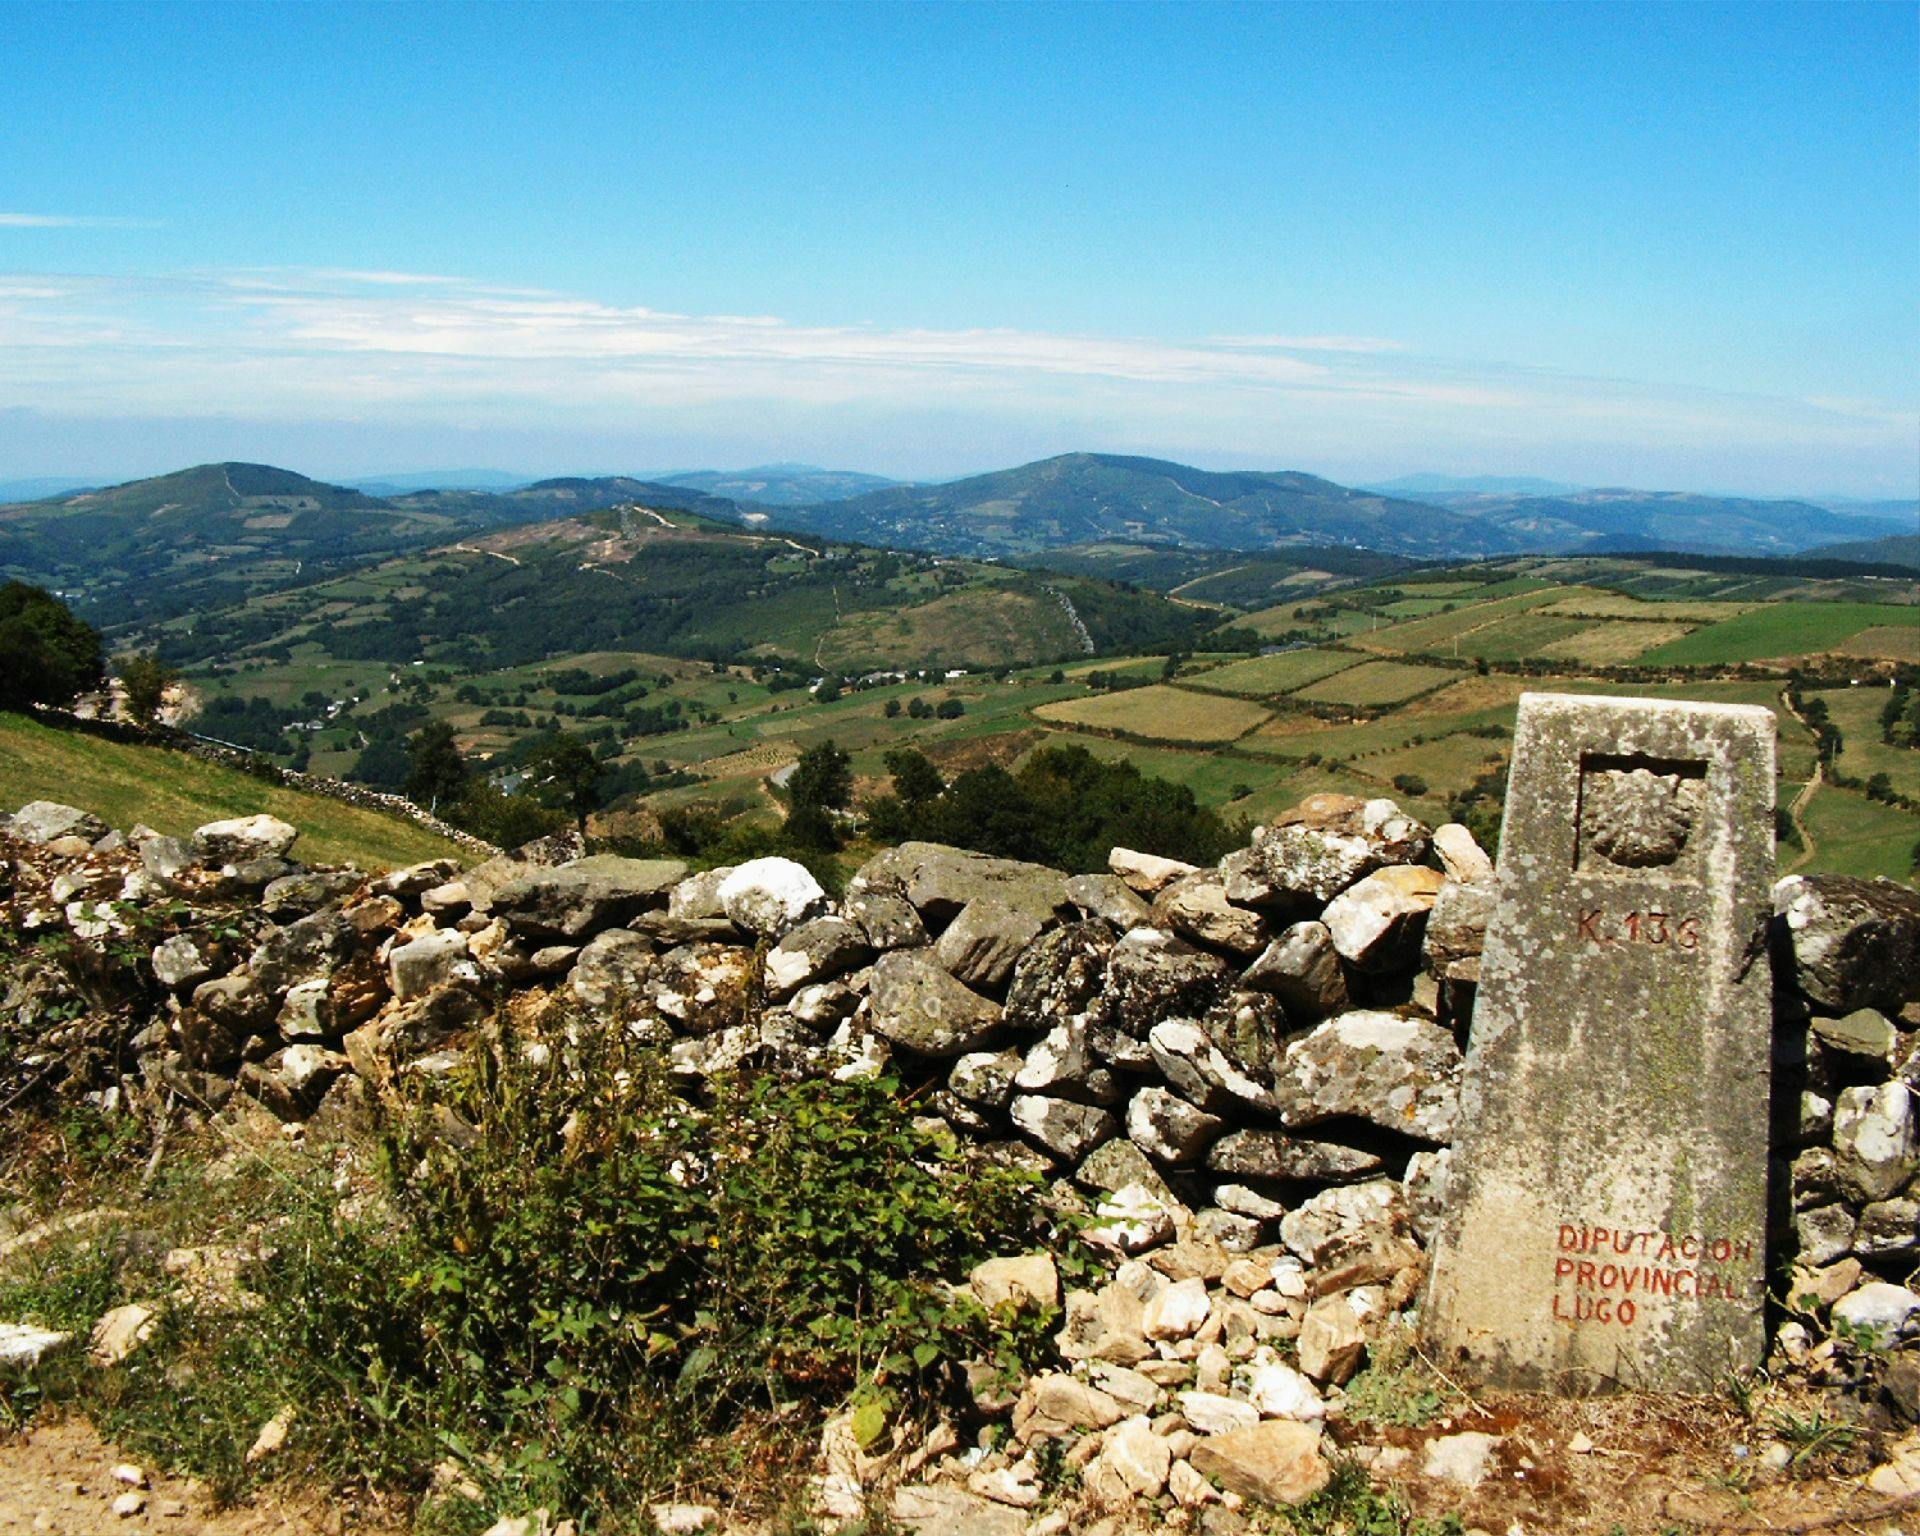 Camino de Santiago stone signal and the fields of Triacastela.